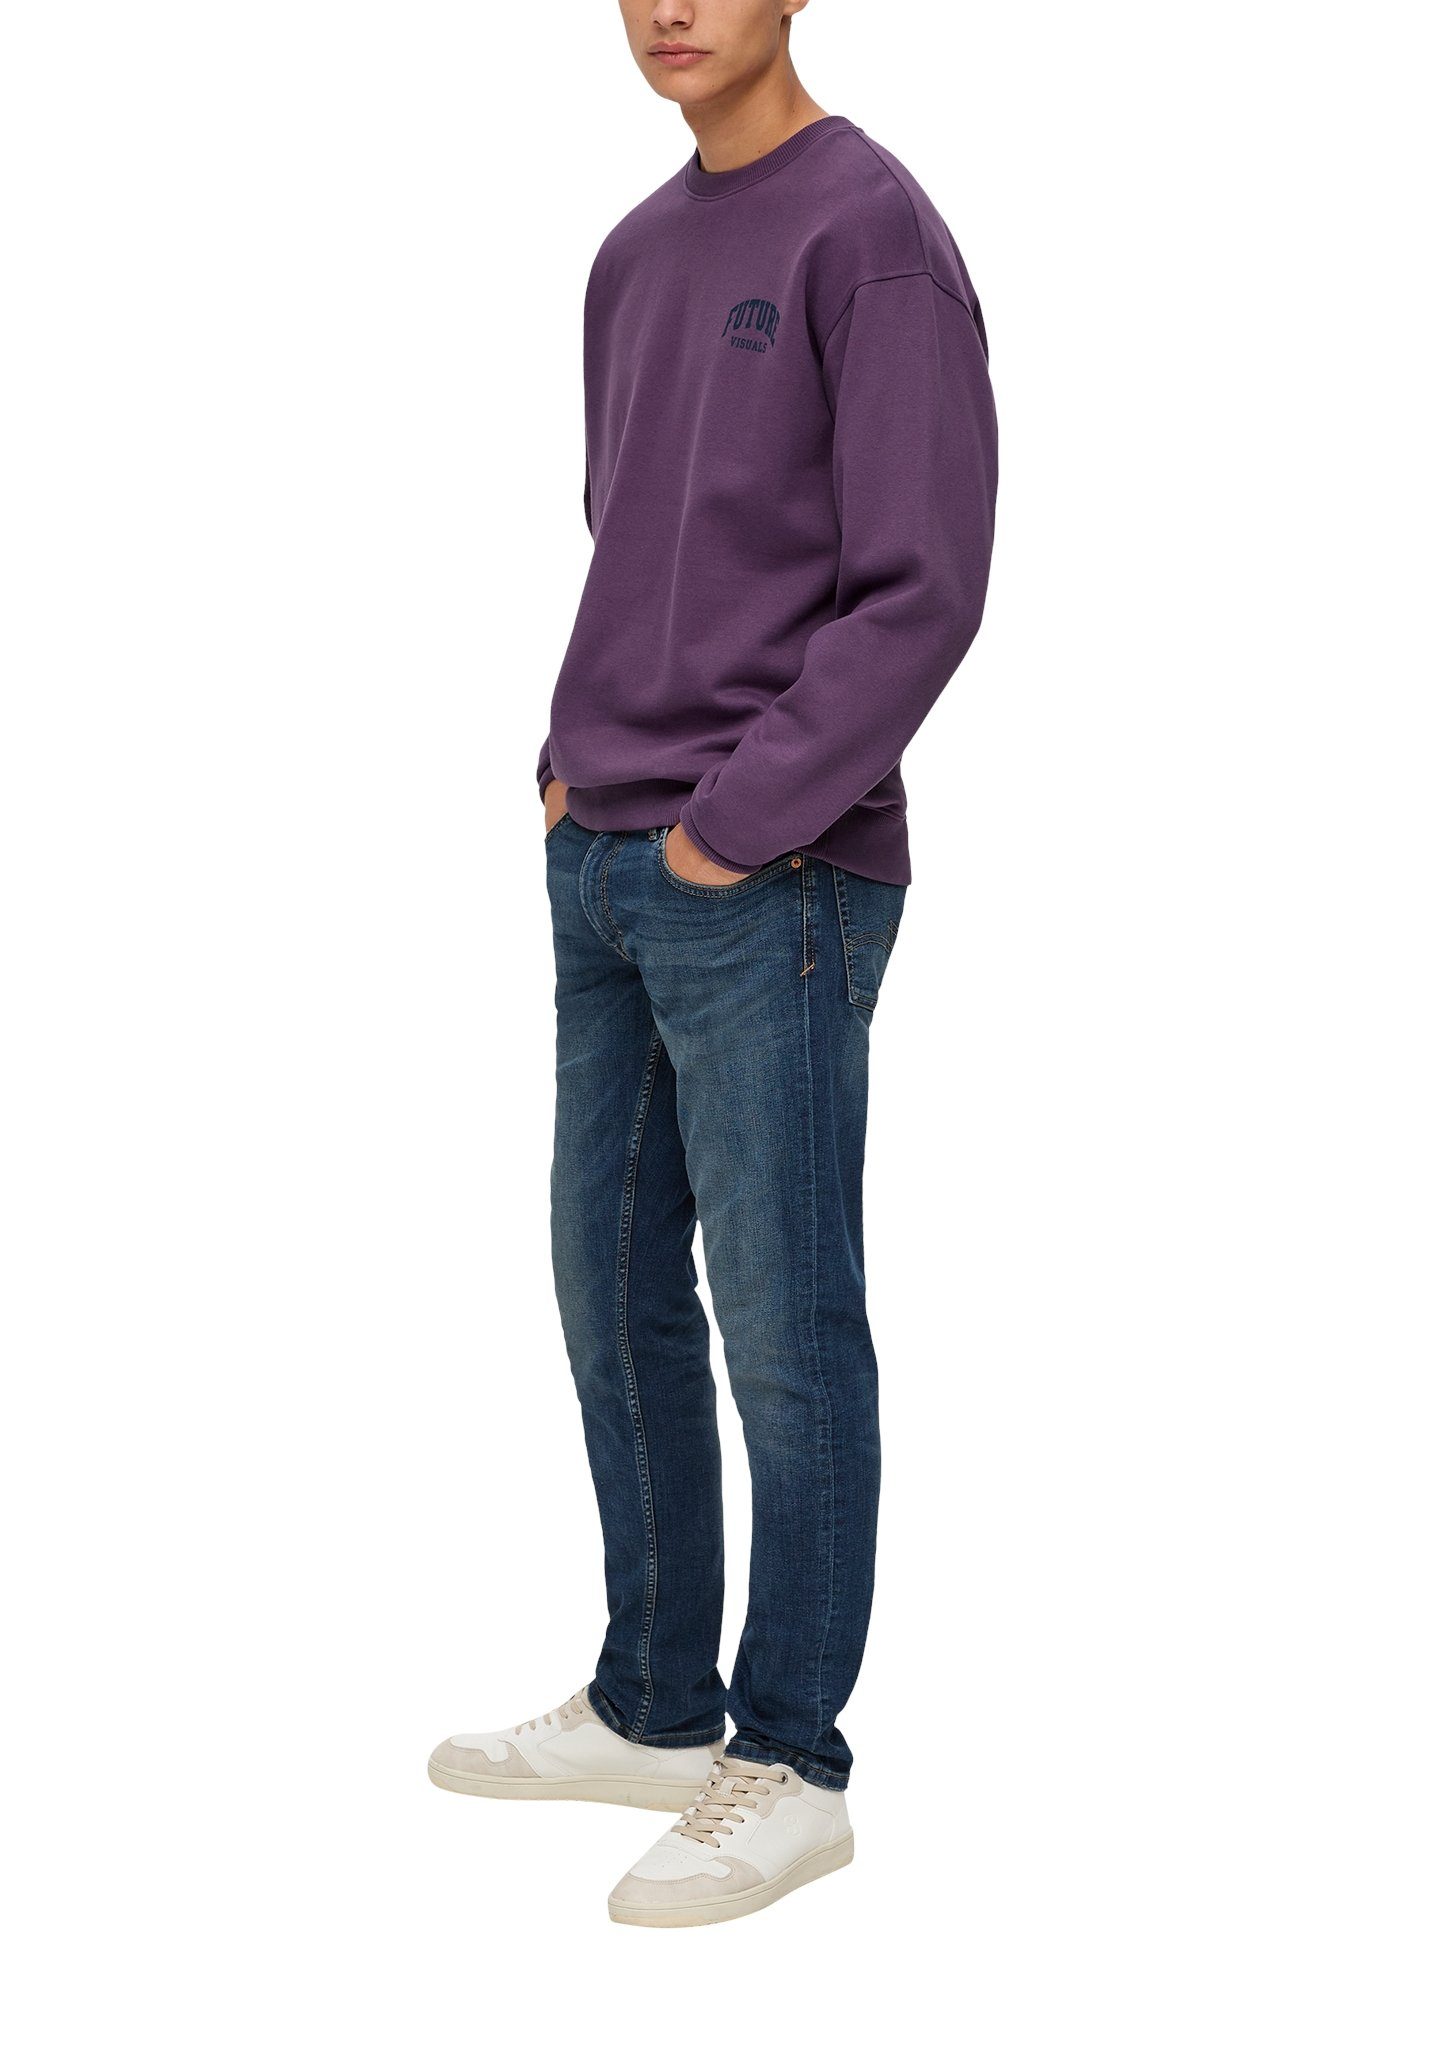 Frontprint kleinem lilac Sweatshirt mit QS